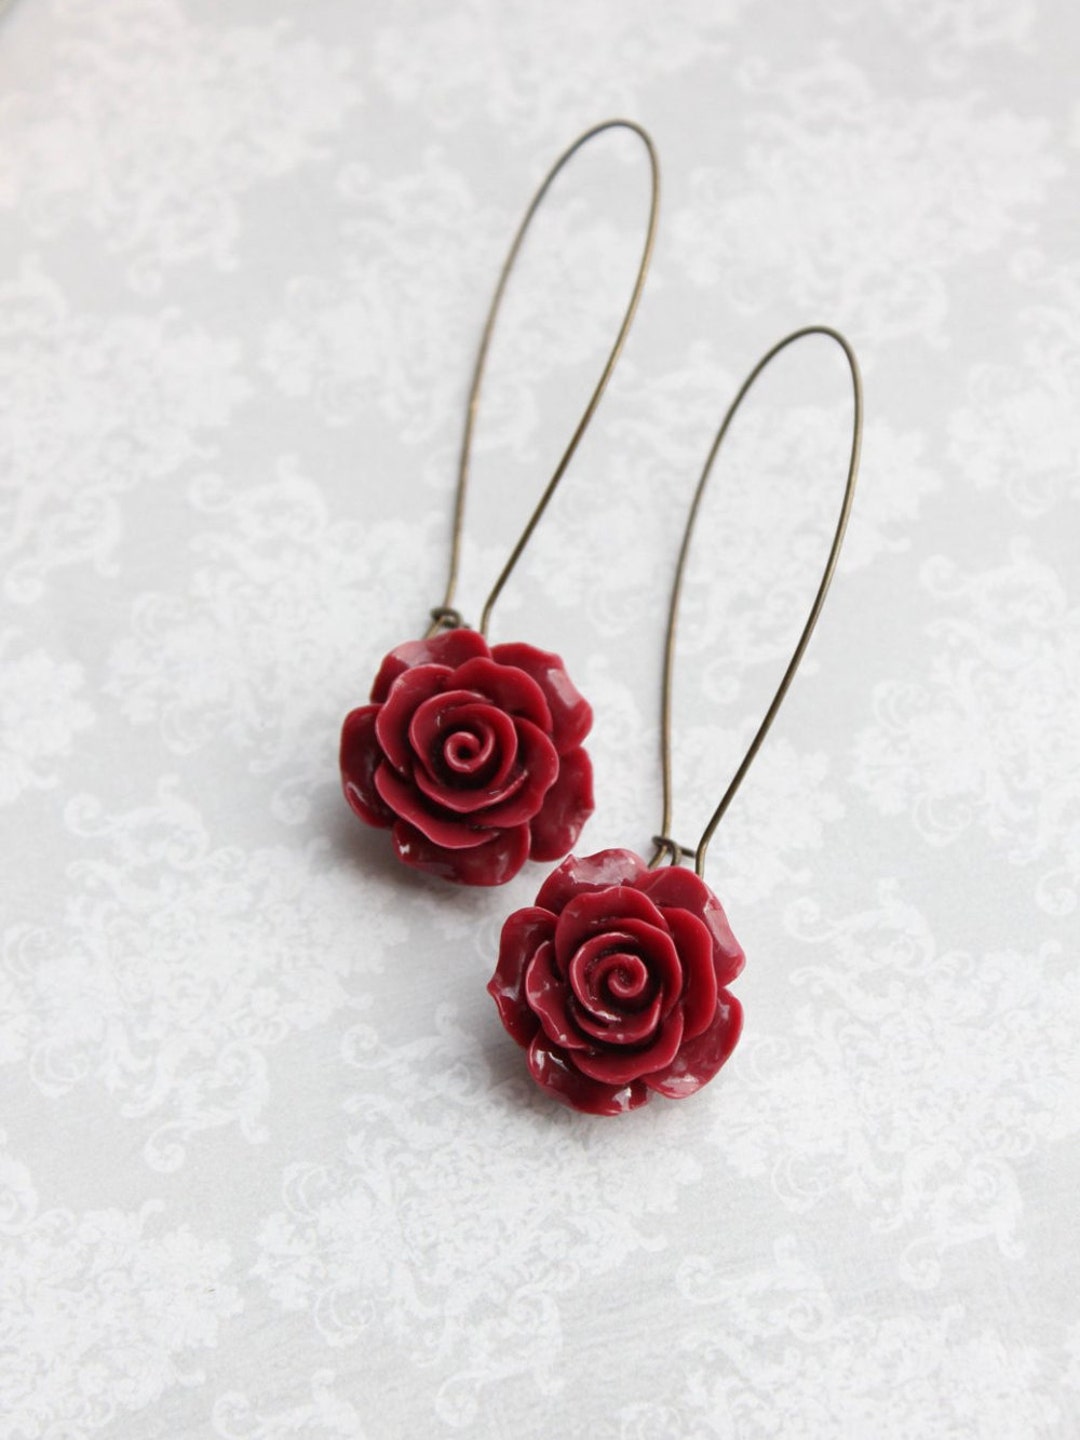 Buy Jamun Dark Red Thread Tassel Fancy Long Earrings for Women at Amazon.in